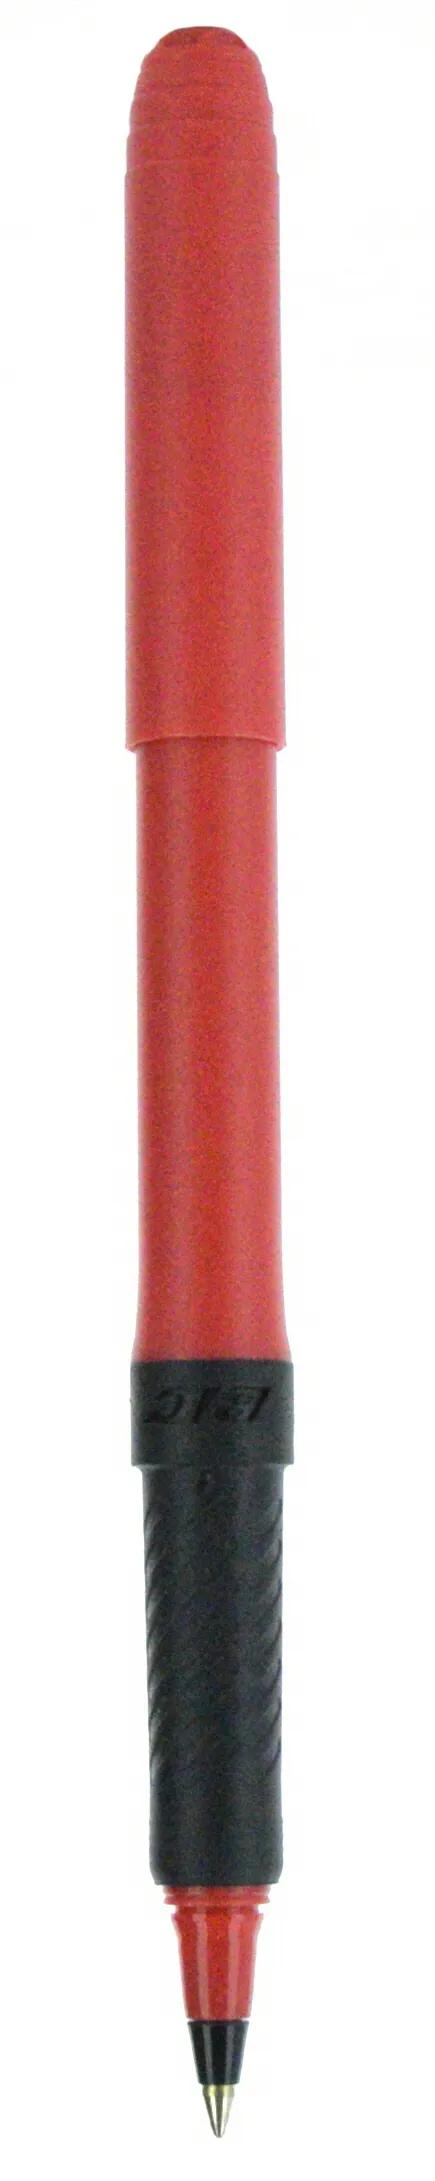 BIC® Grip Roller Pen 108 of 147